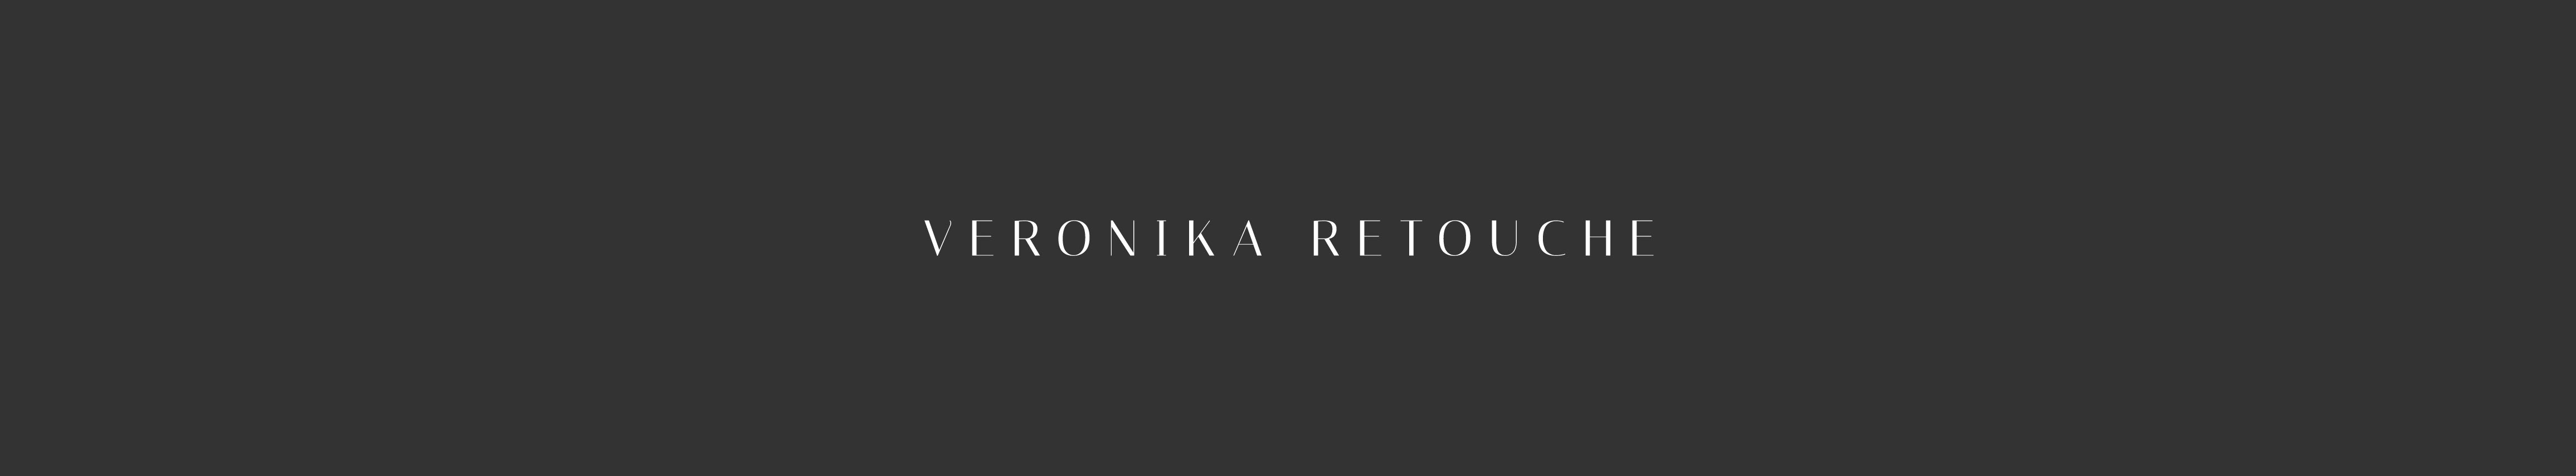 Veronika Retouche's profile banner